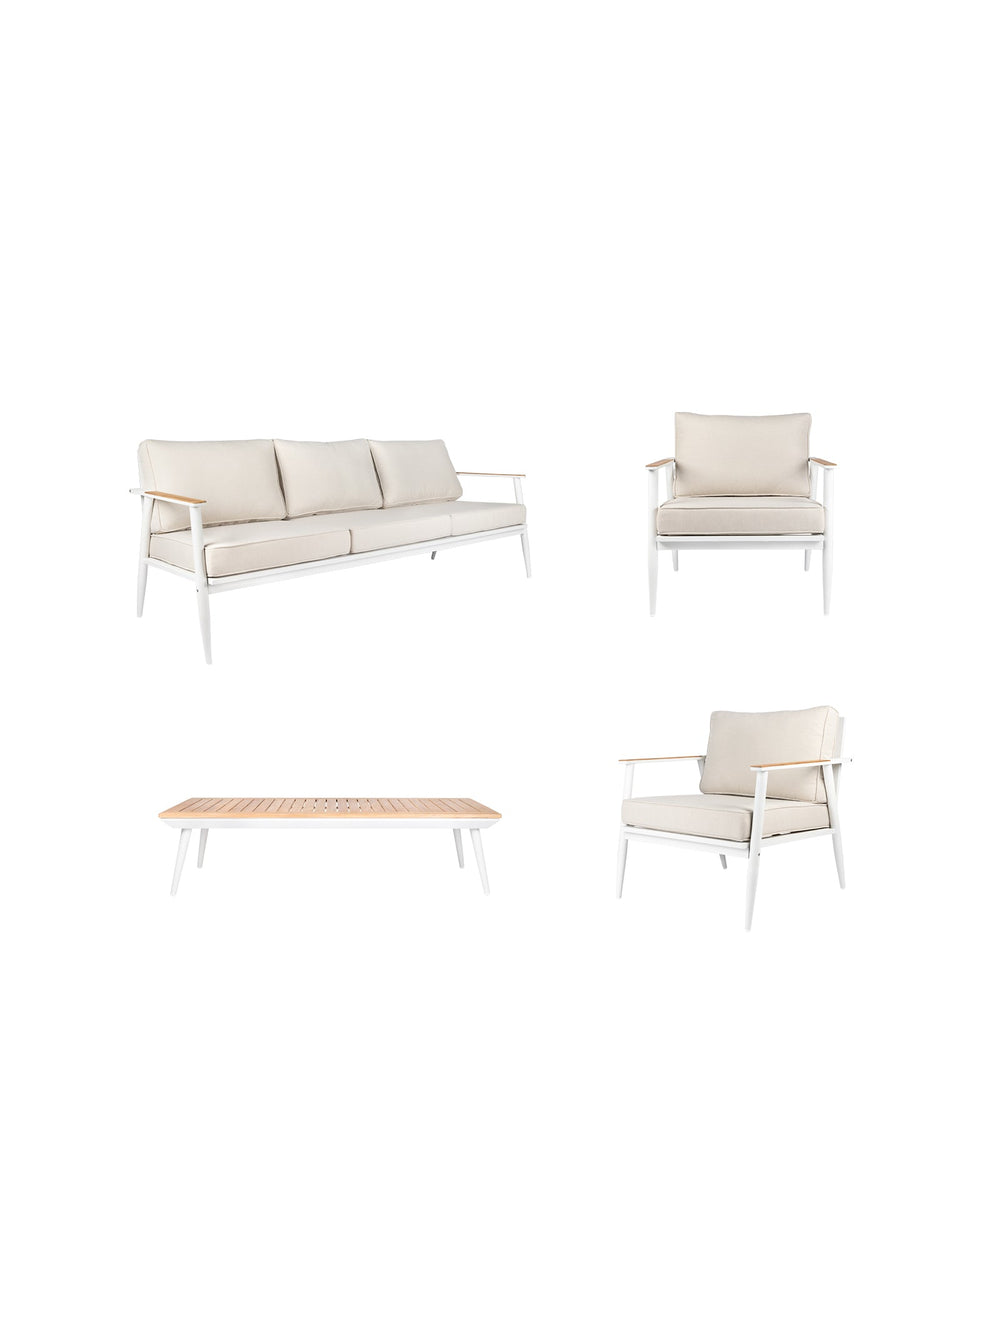 Oasis Outdoor Sofa Set - Outdoor Furniture - Chair- Hertex Haus Online - badge_fully_outdoor